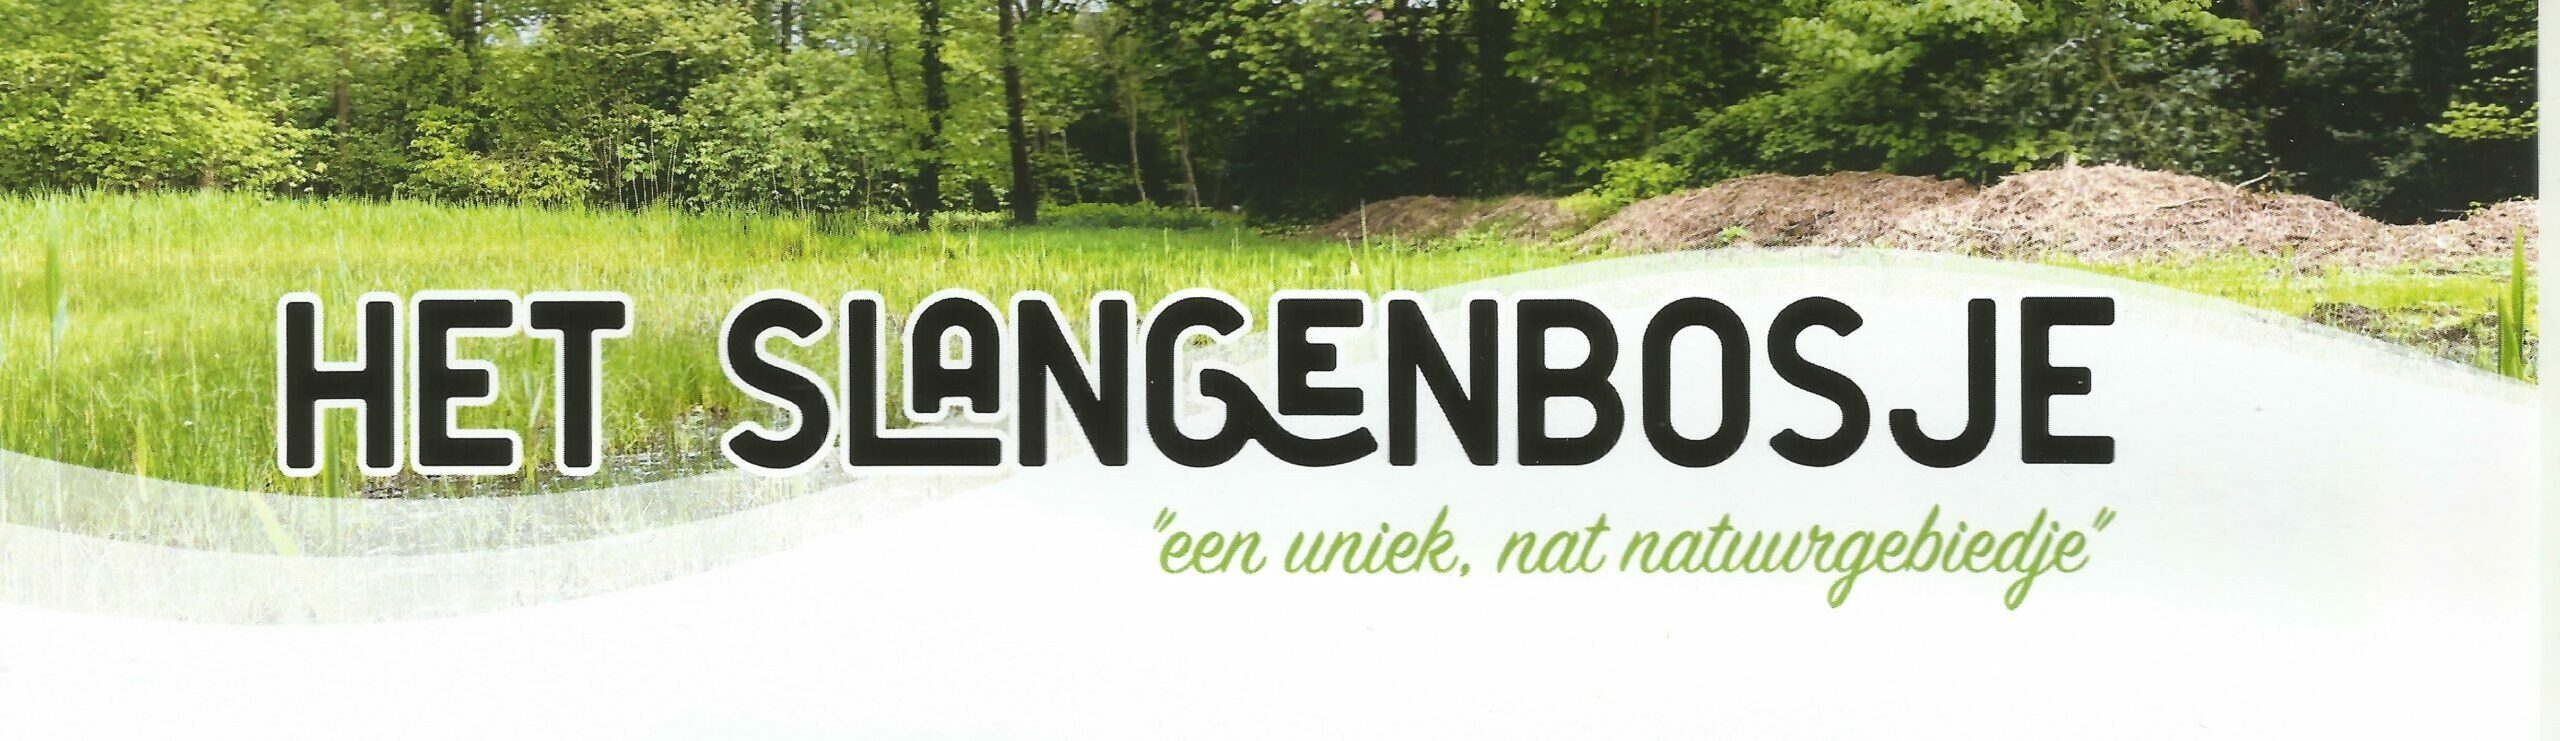 afbeelding van Slangenbosje met titel tekst: Slangebosje een nat natuurgebiedje